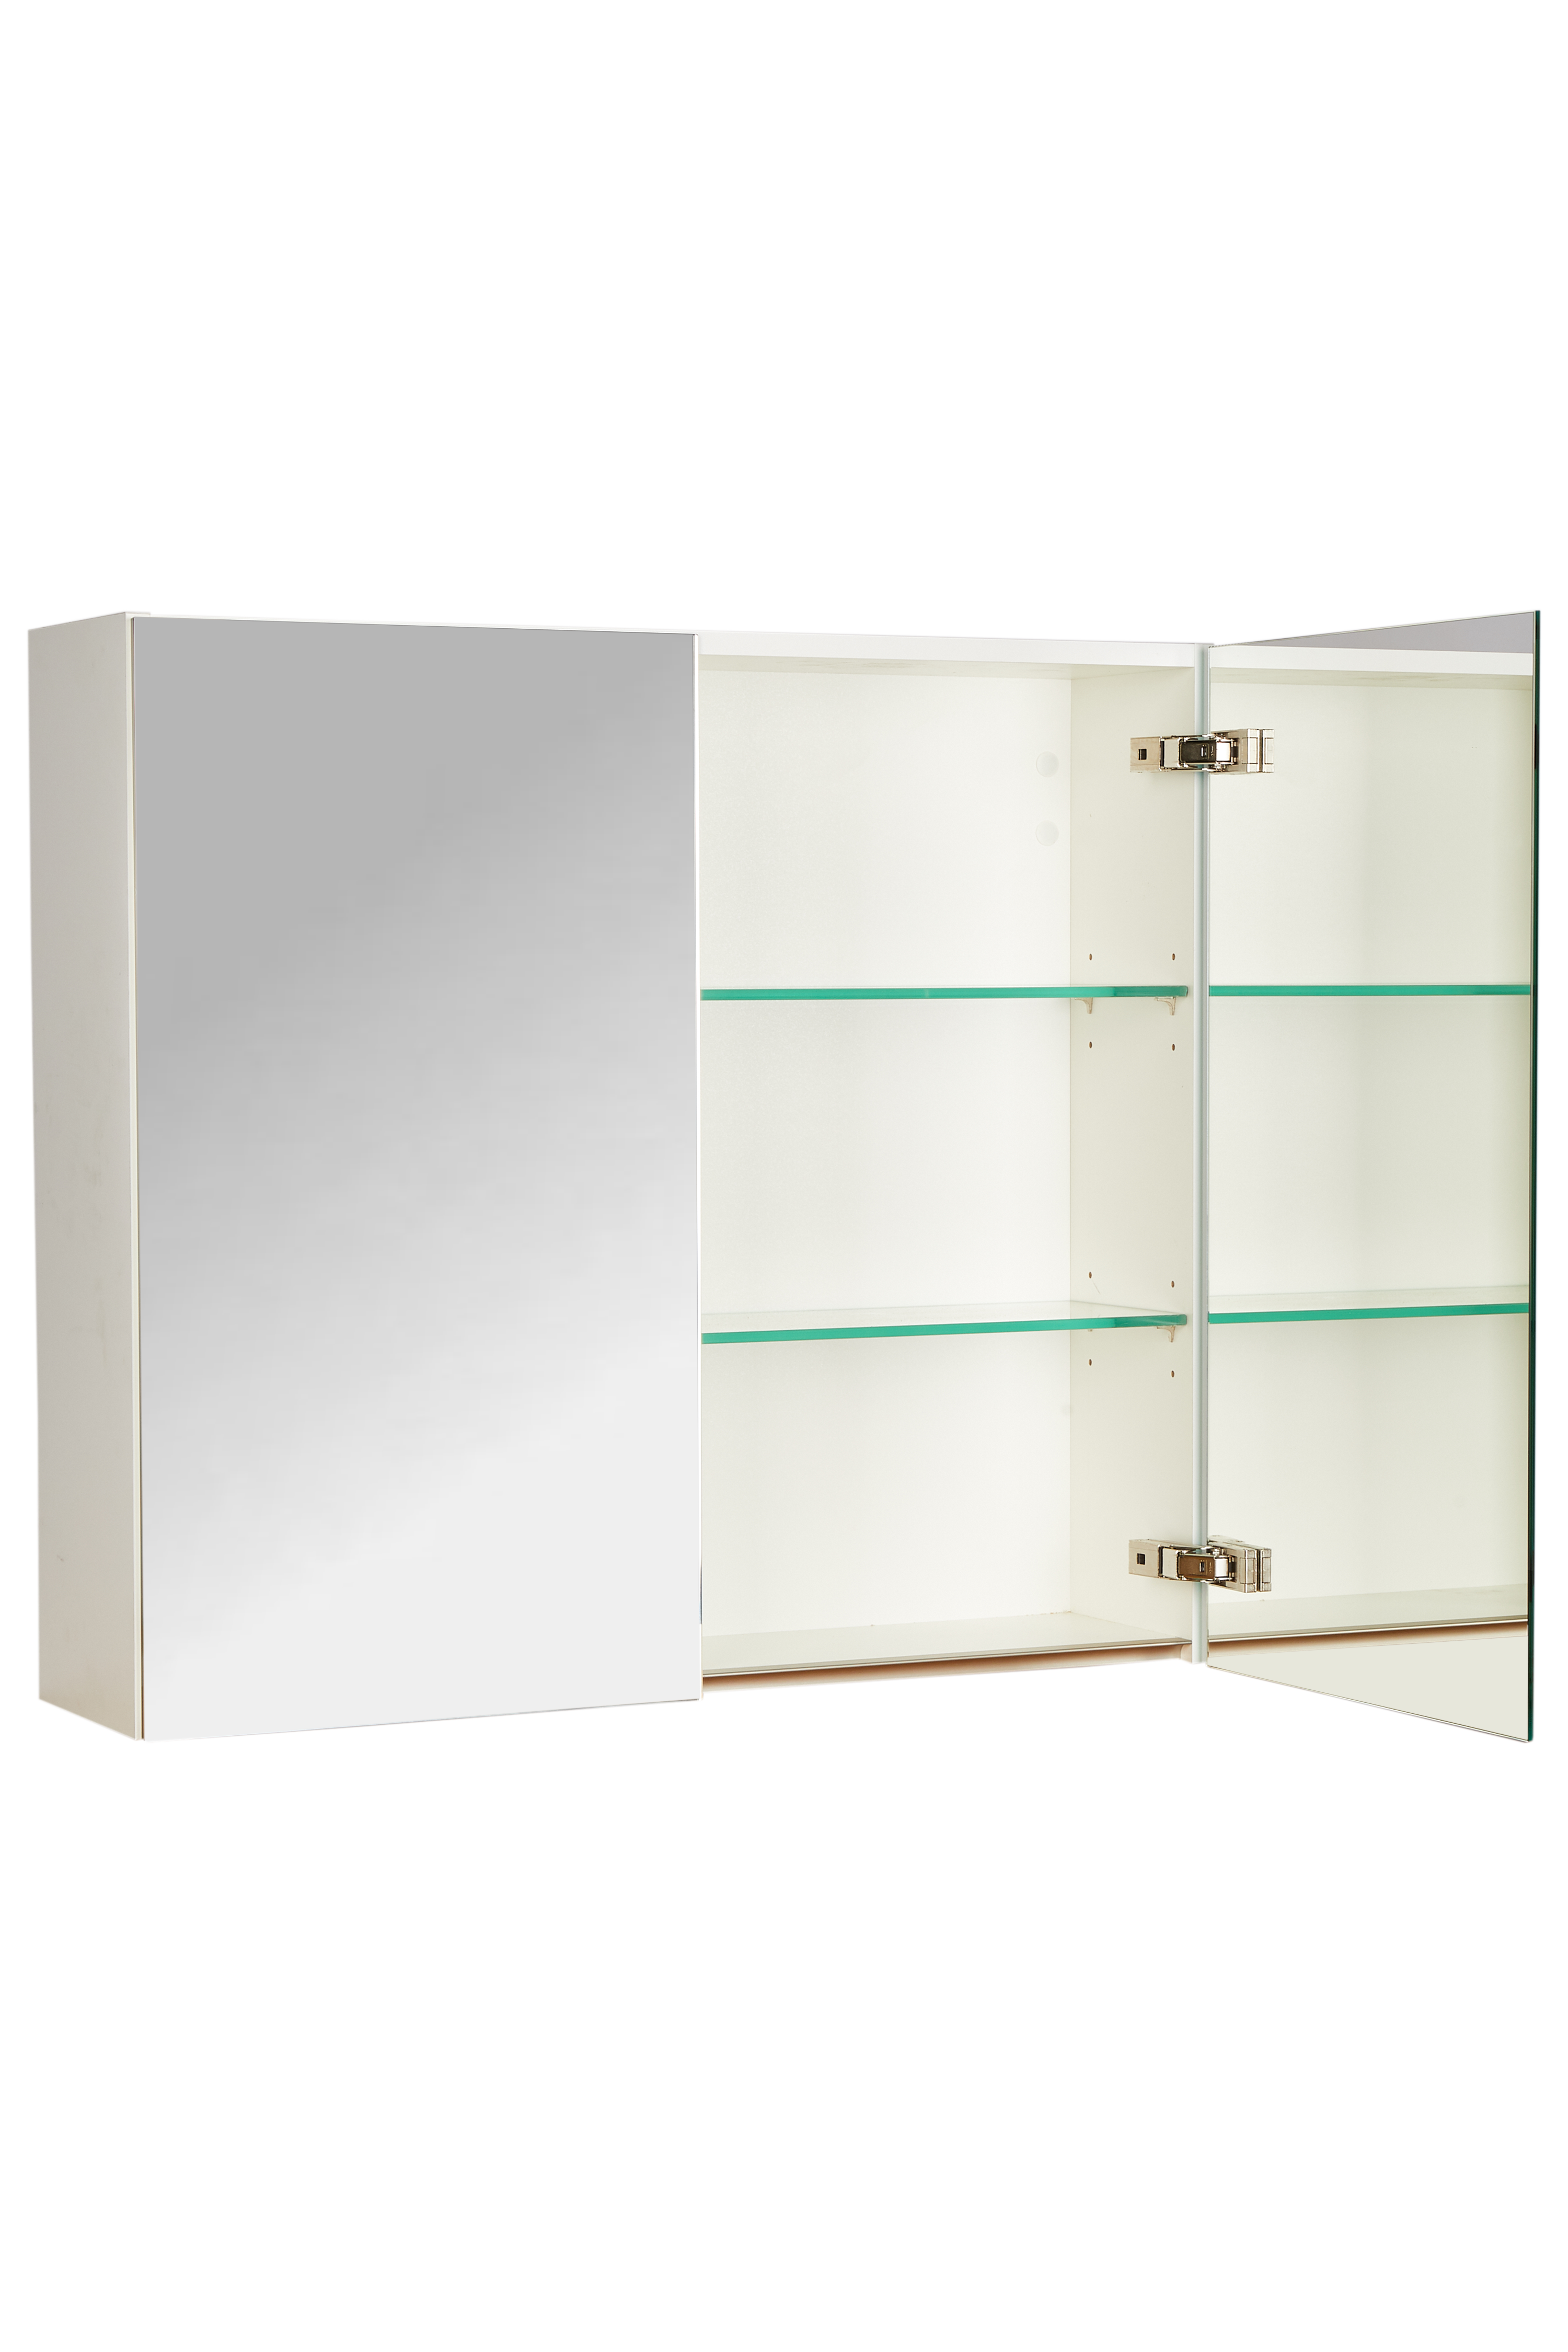 Spiegelschrank, 80cm breit, beidseitig verspiegelt, Glasablageböden no_nobilia_CityKüchen24